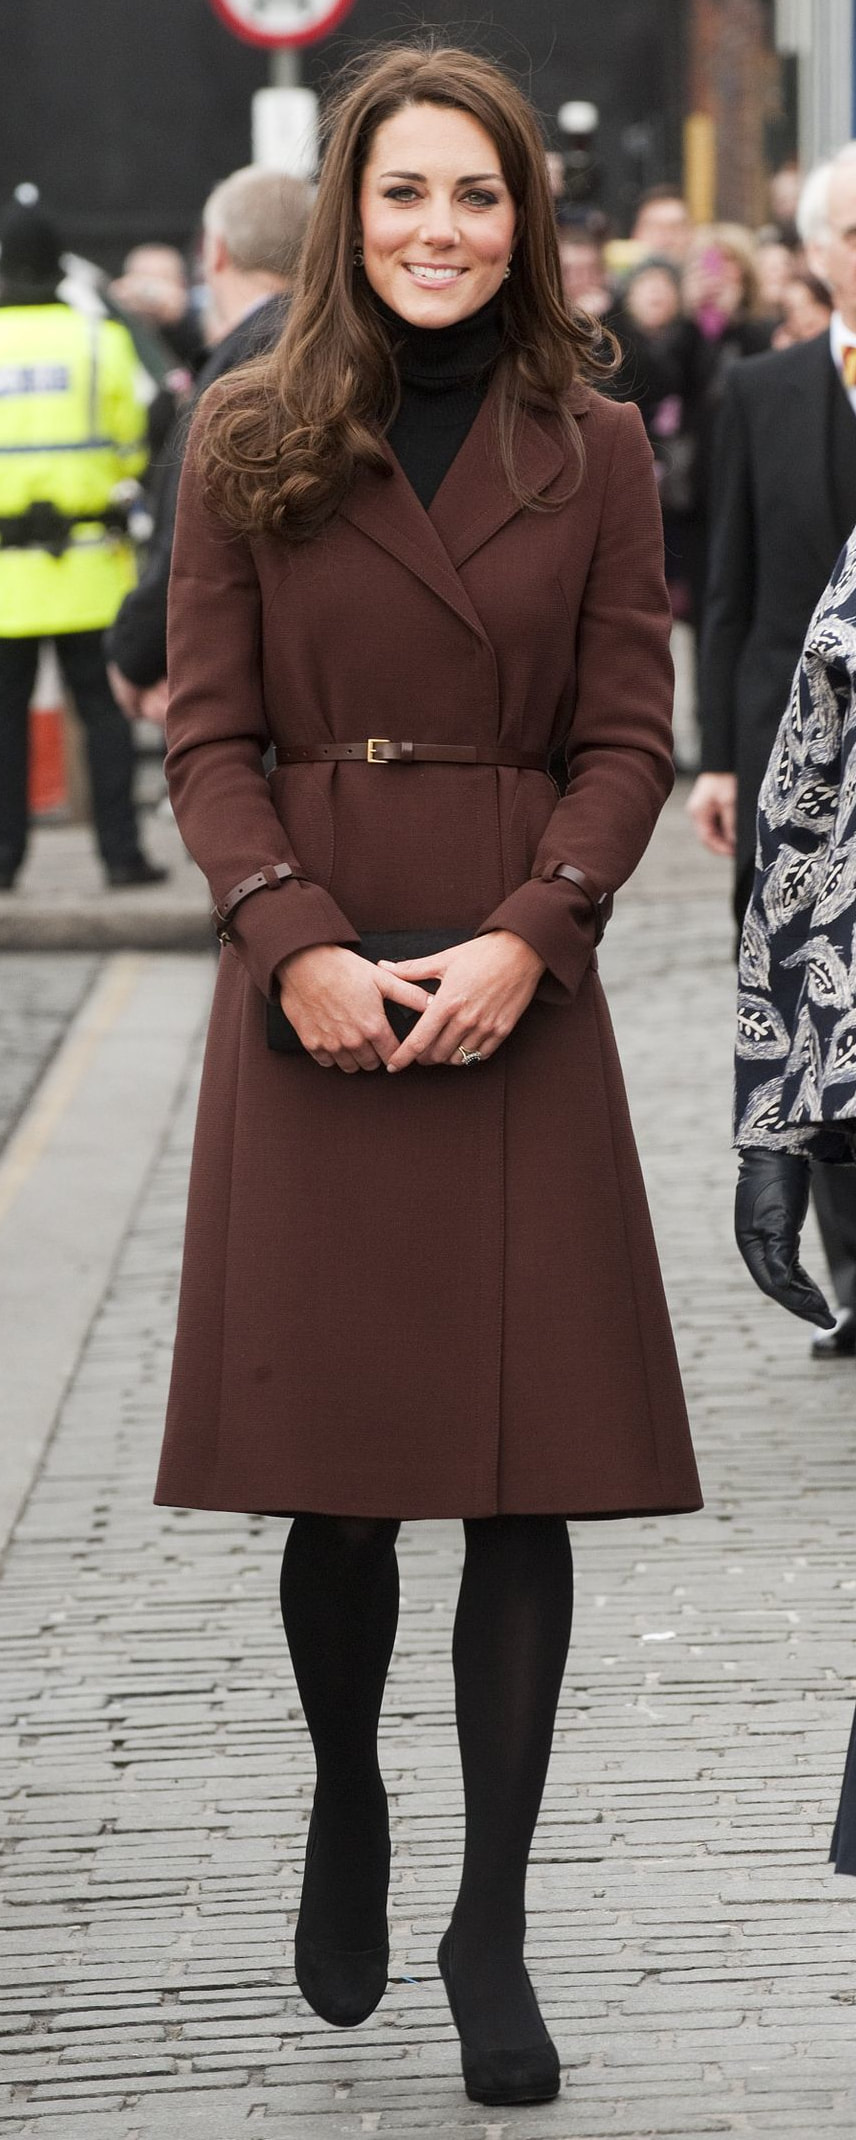 Hobbs Celeste Coat in Chestnut Brown as seen on Kate Middleton, The Duchess of Cambridge.